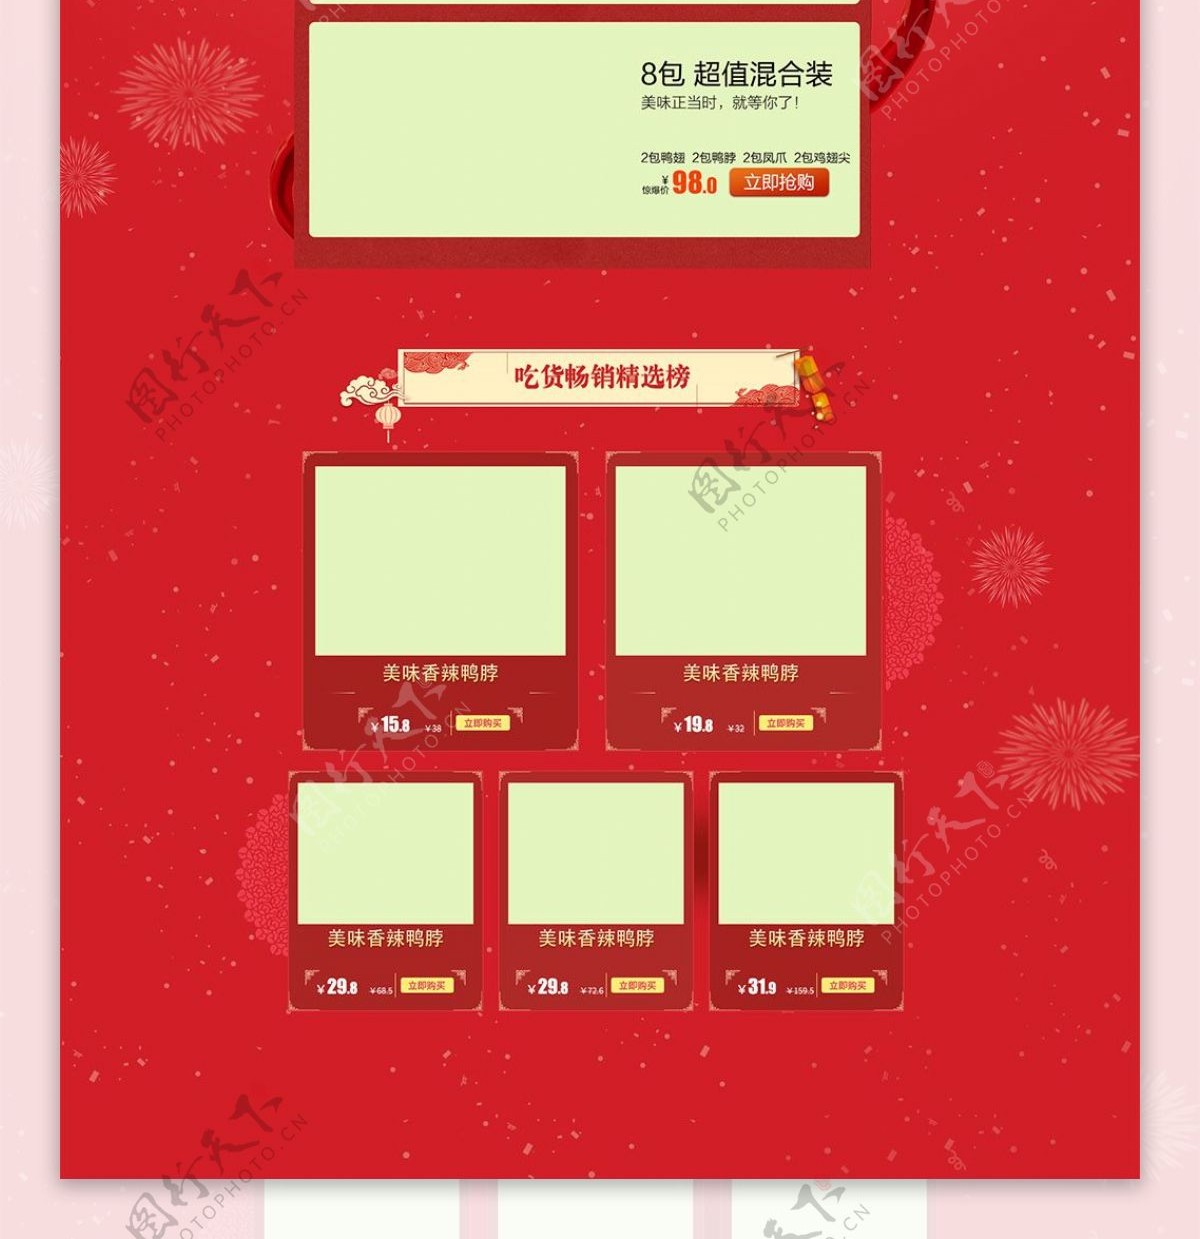 红色喜庆年货节PC端首页模板